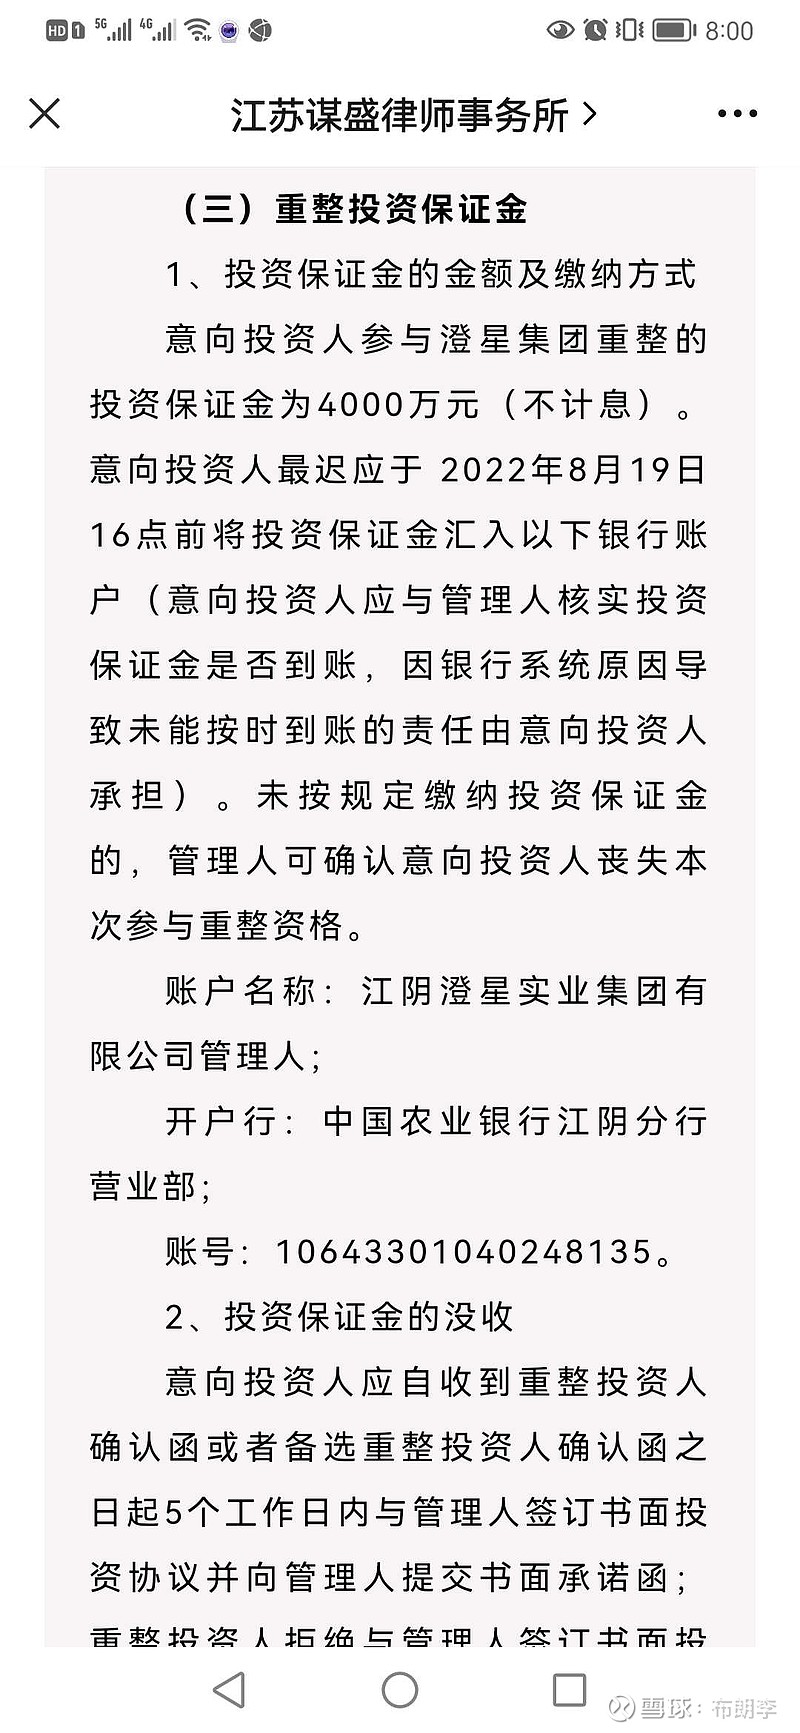 江阴澄星实业集团有限公司重整投